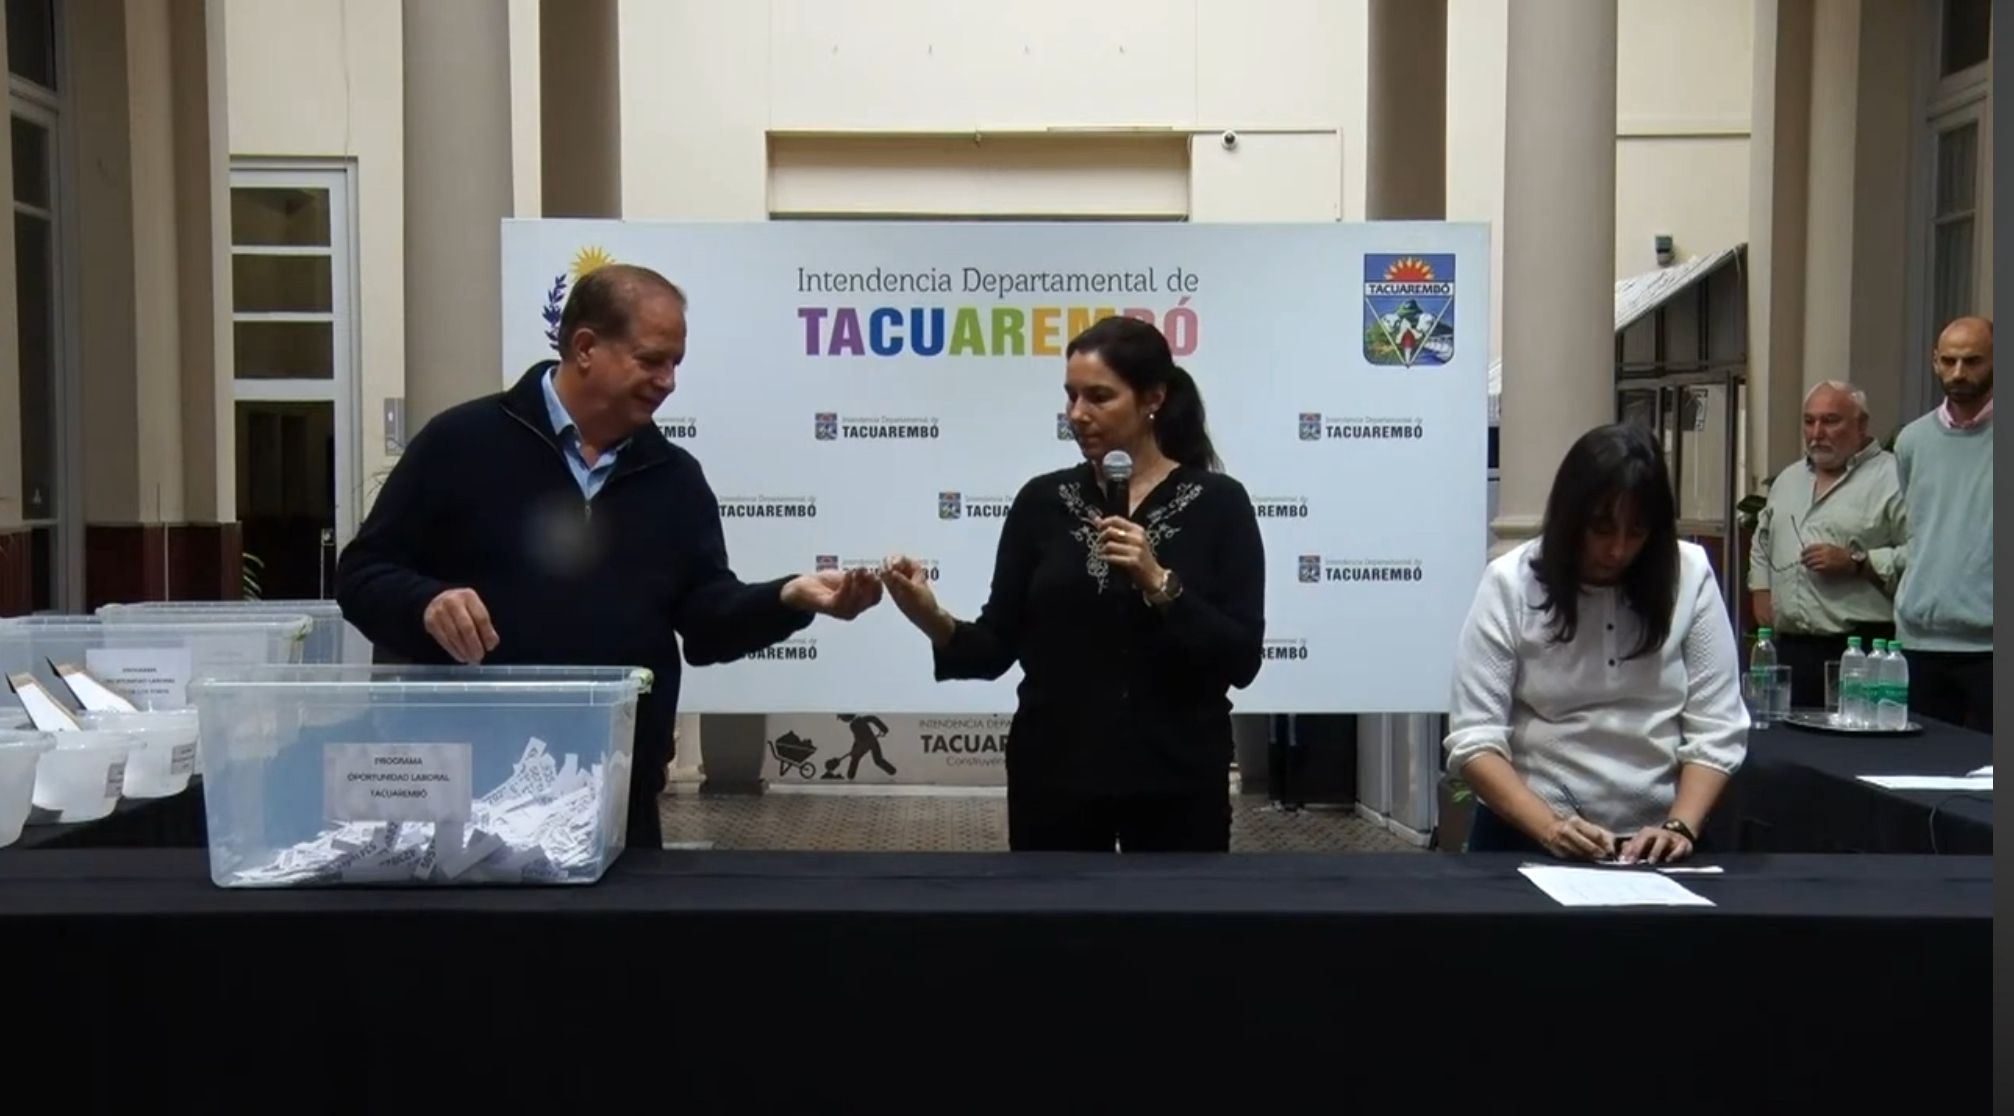 Aquí la lista de cédulas sorteadas para el Programa Oportunidad Laboral en el Departamento de Tacuarembó. Etapa 1 fase 5